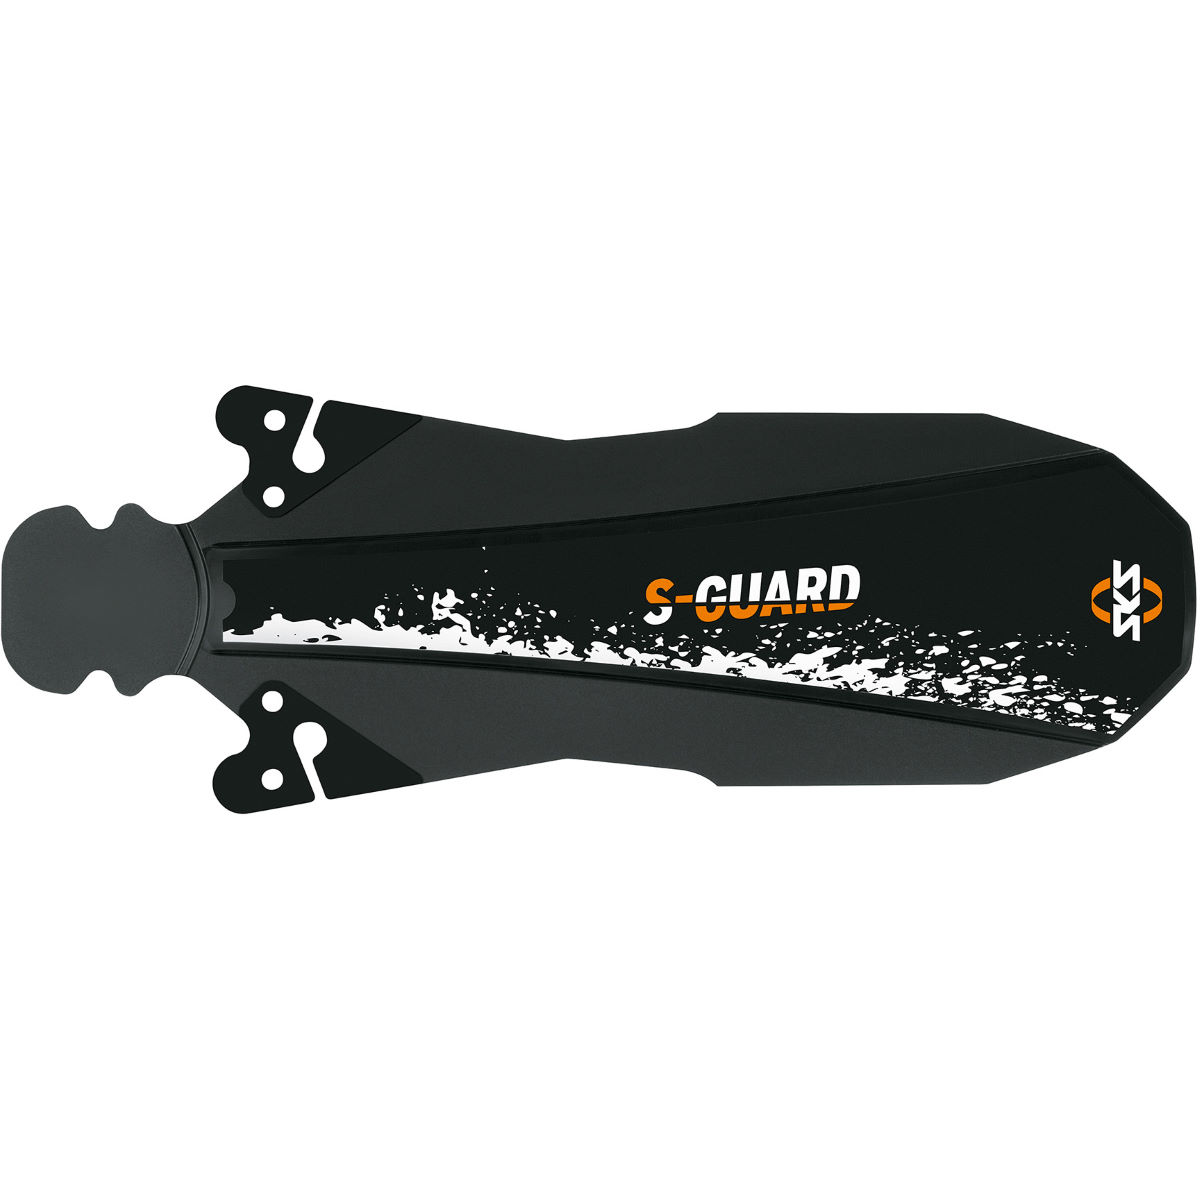 Guardabarros SKS S-Guard - Guardabarros de quita y pon